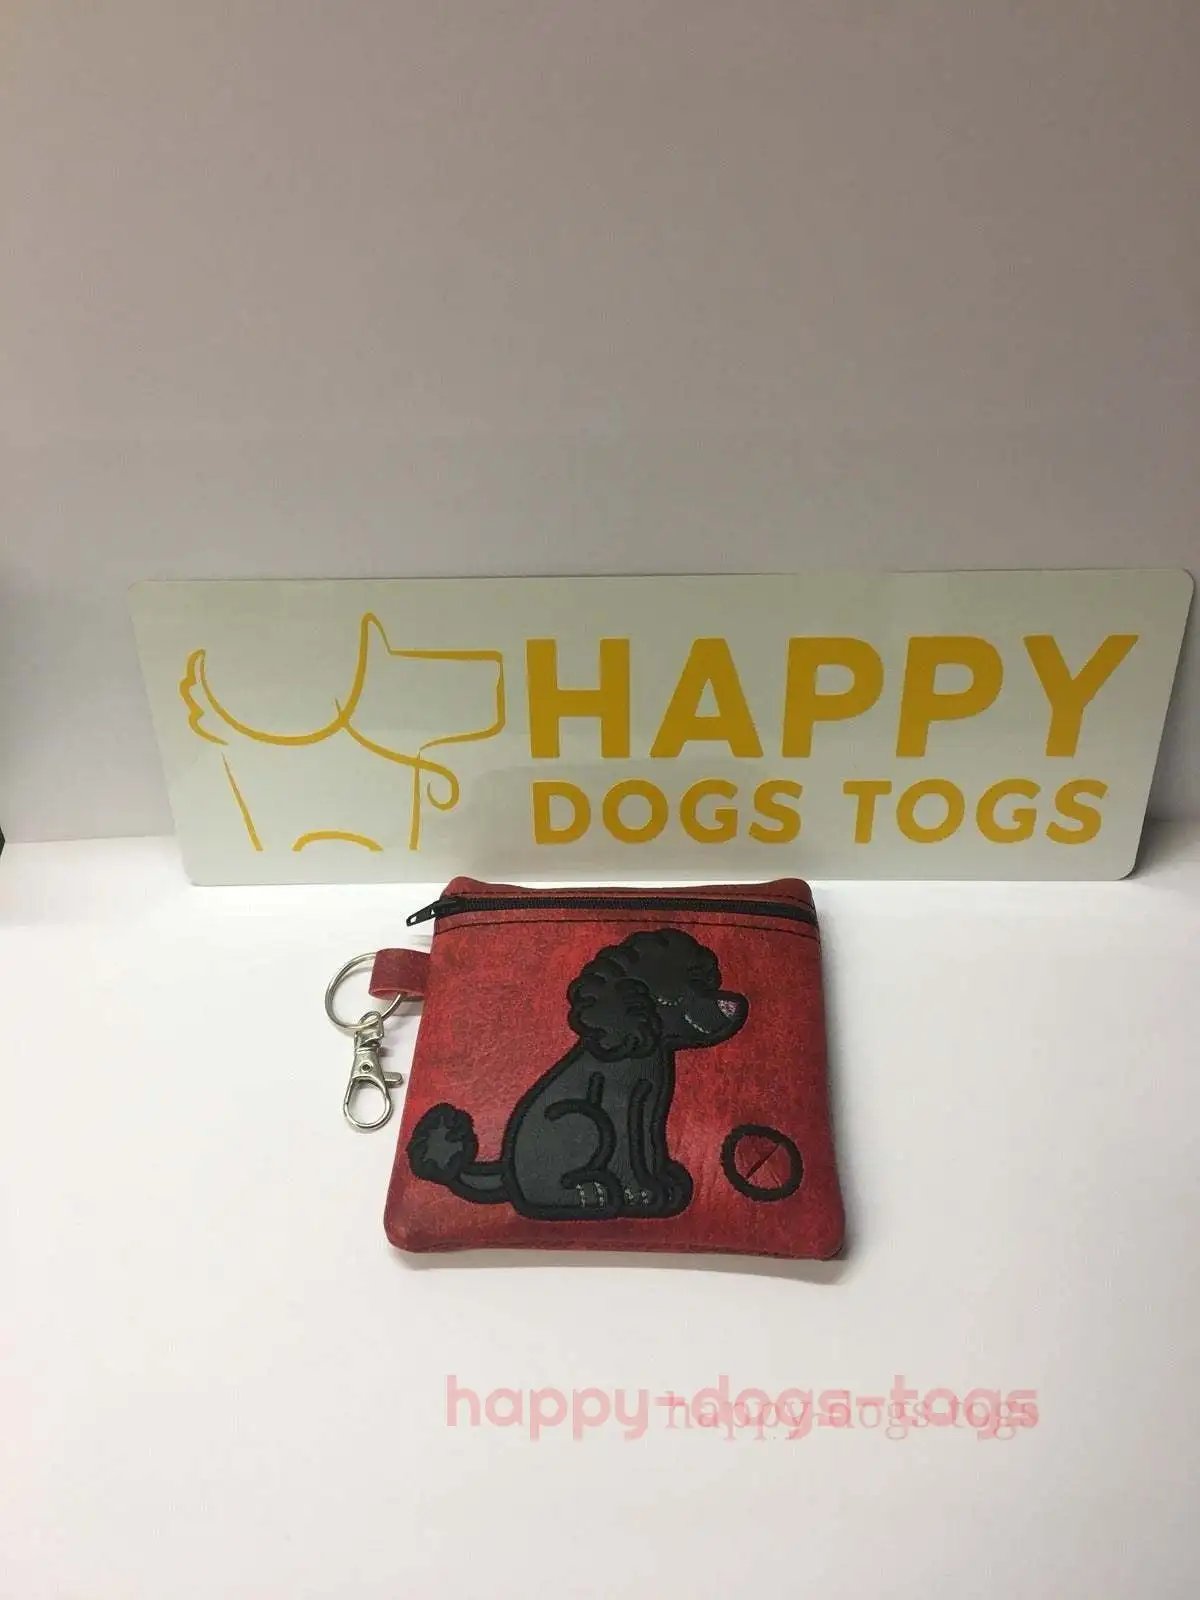 Red Sitting Poodle embroidered Dog poo bag dispenser